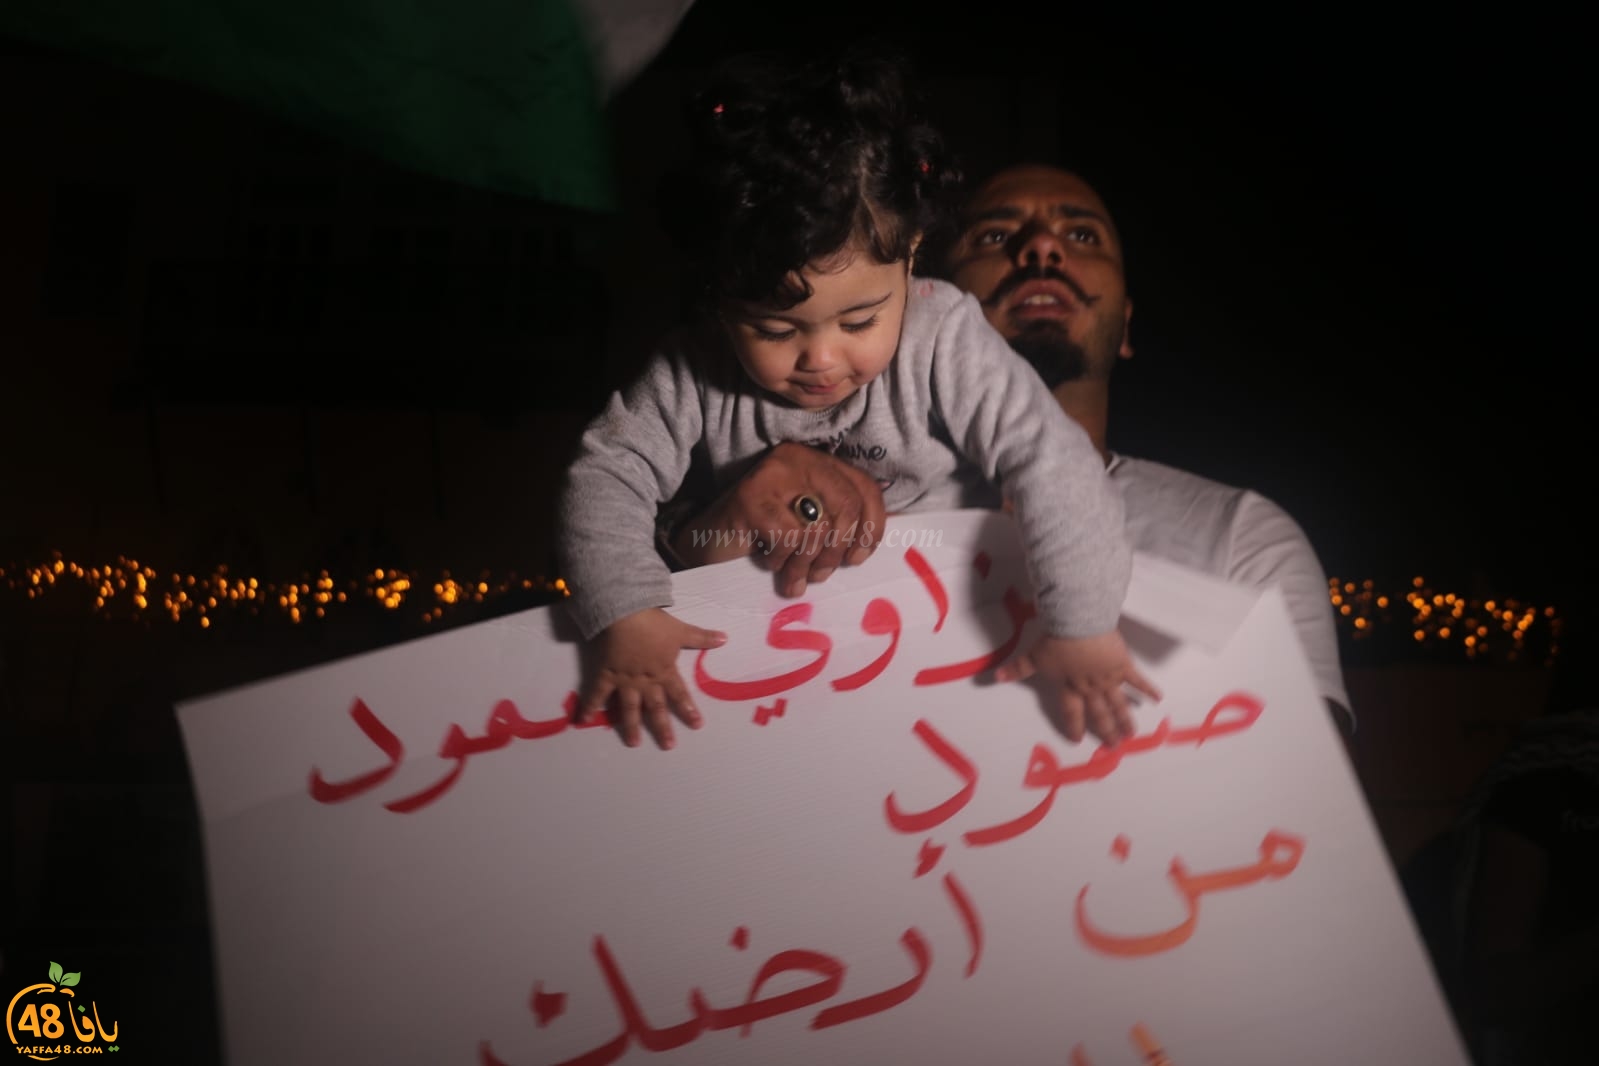 صور: للمرة الرابعة - أهالي يافا ينظمون وقفة تضامنية مع أهالي قطاع غزة المحاصر 